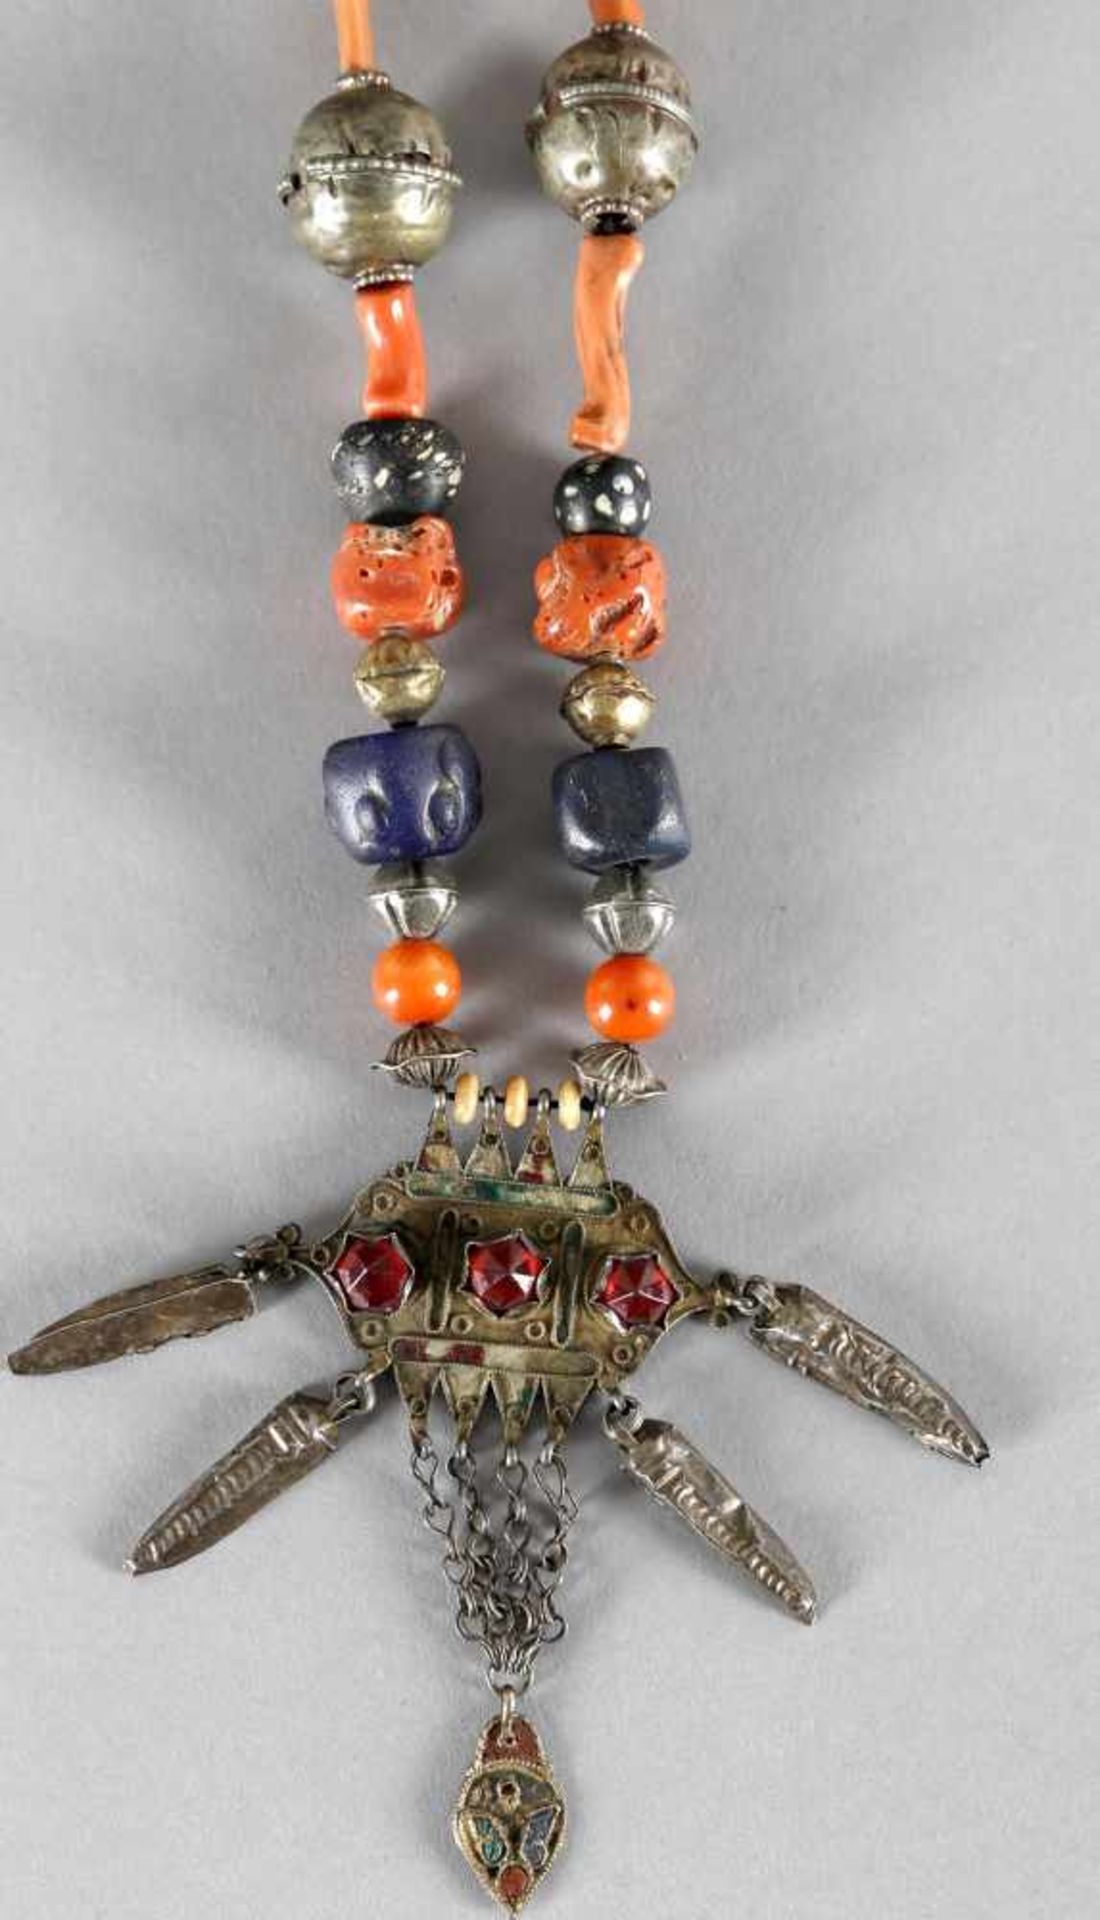 Collier mit symmetrisch angeordneten Perlen verschiedener Materialien wie Silber, Koralle, Glasdiese